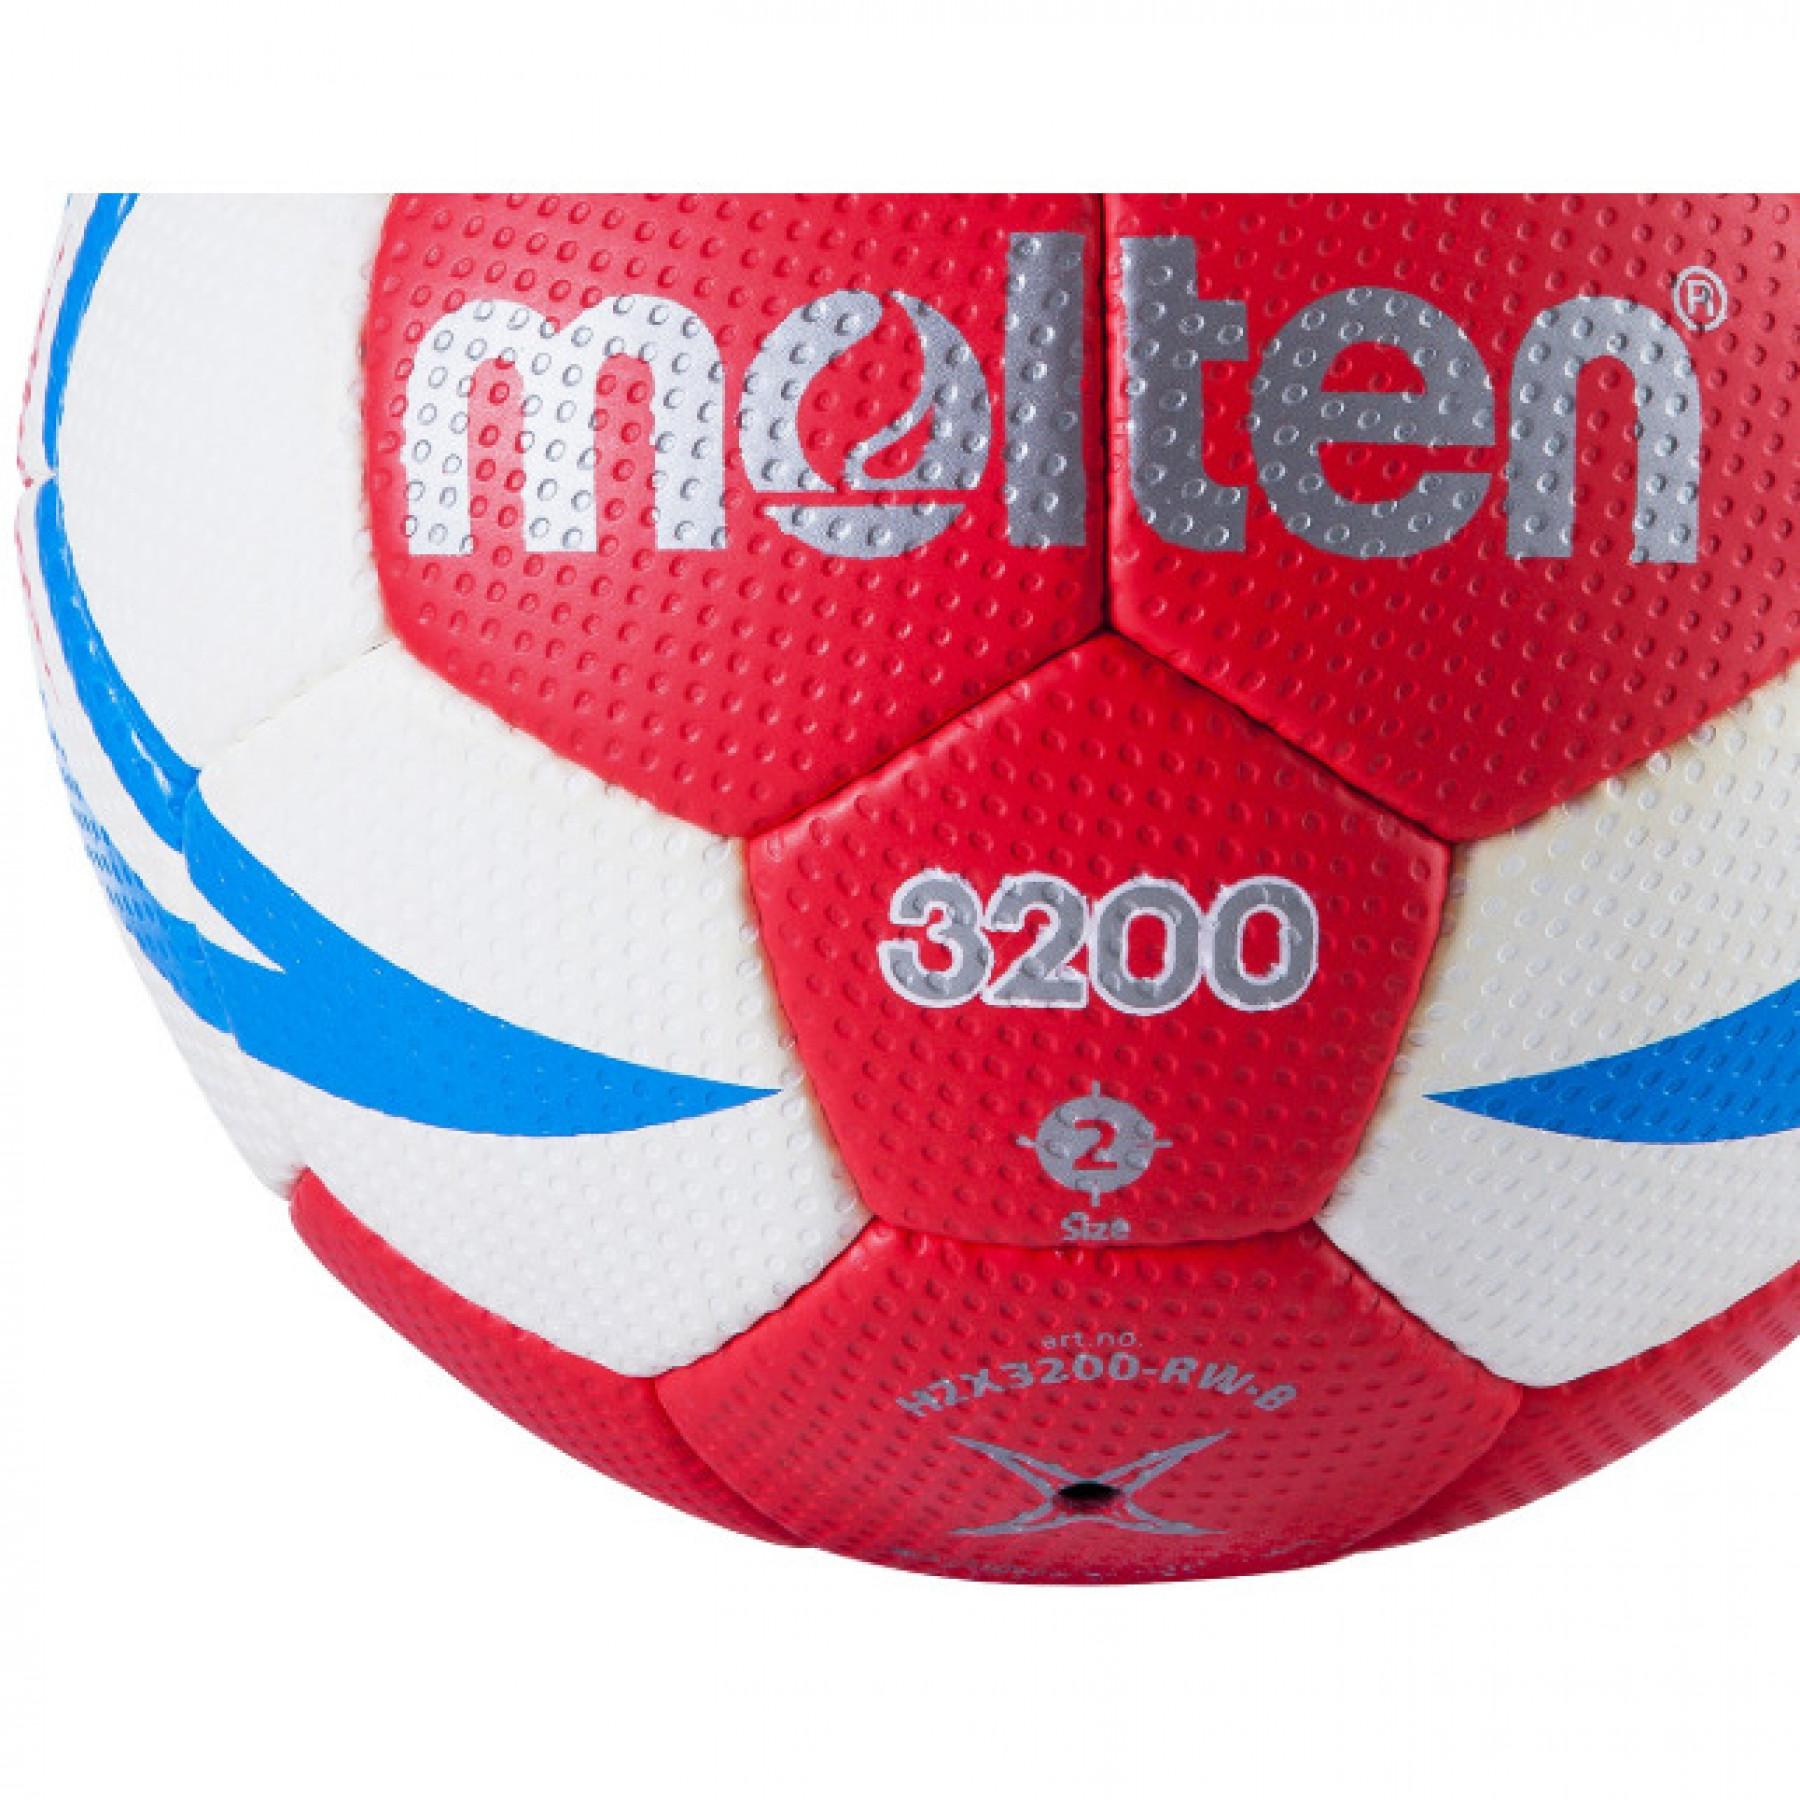 Trainingsbal Molten HX3200 FFHB taille 2